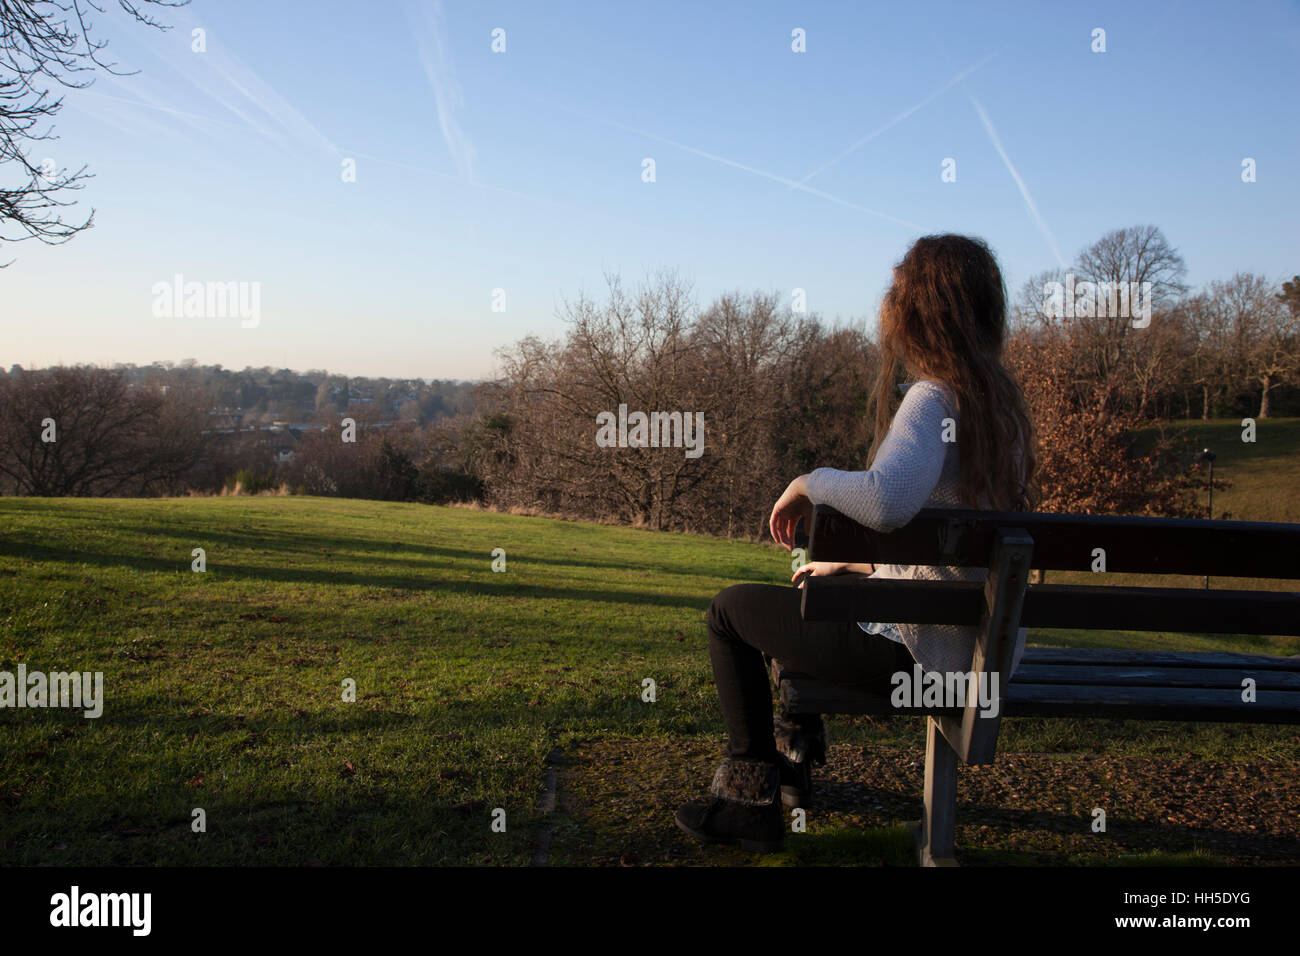 Pensativo joven sentada sola en un banco mirando a la distancia, en una ubicación tranquila con un cielo de luz y árboles. Foto de stock